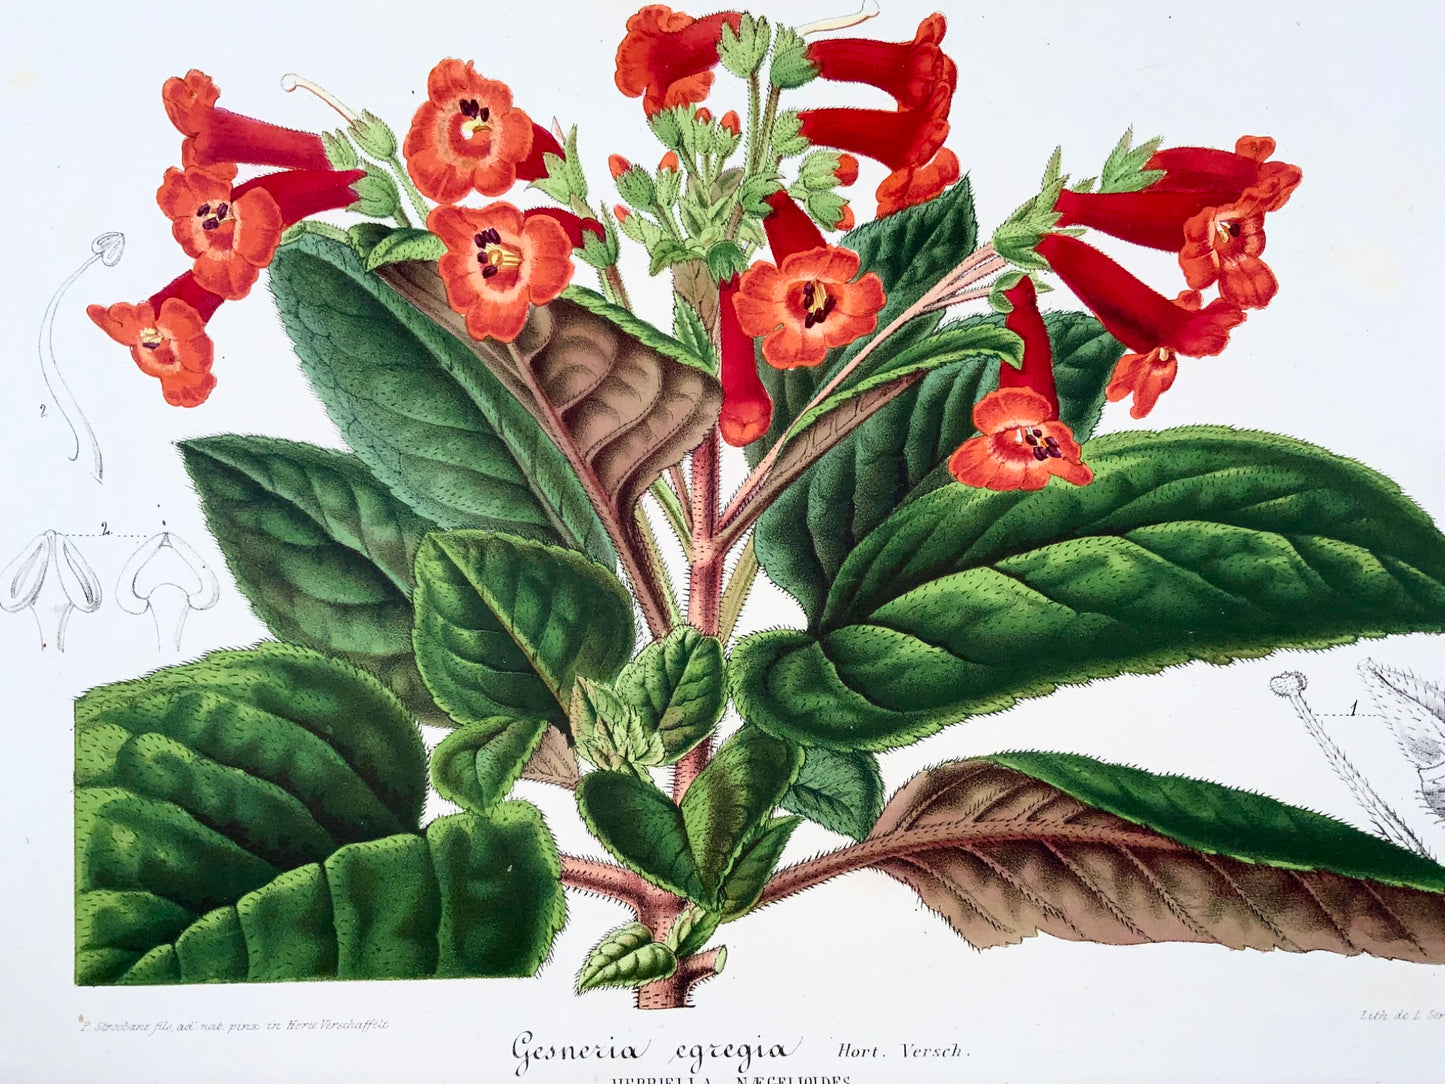 1856 "Gesneria egregia", litografia, colore originale a mano, botanica